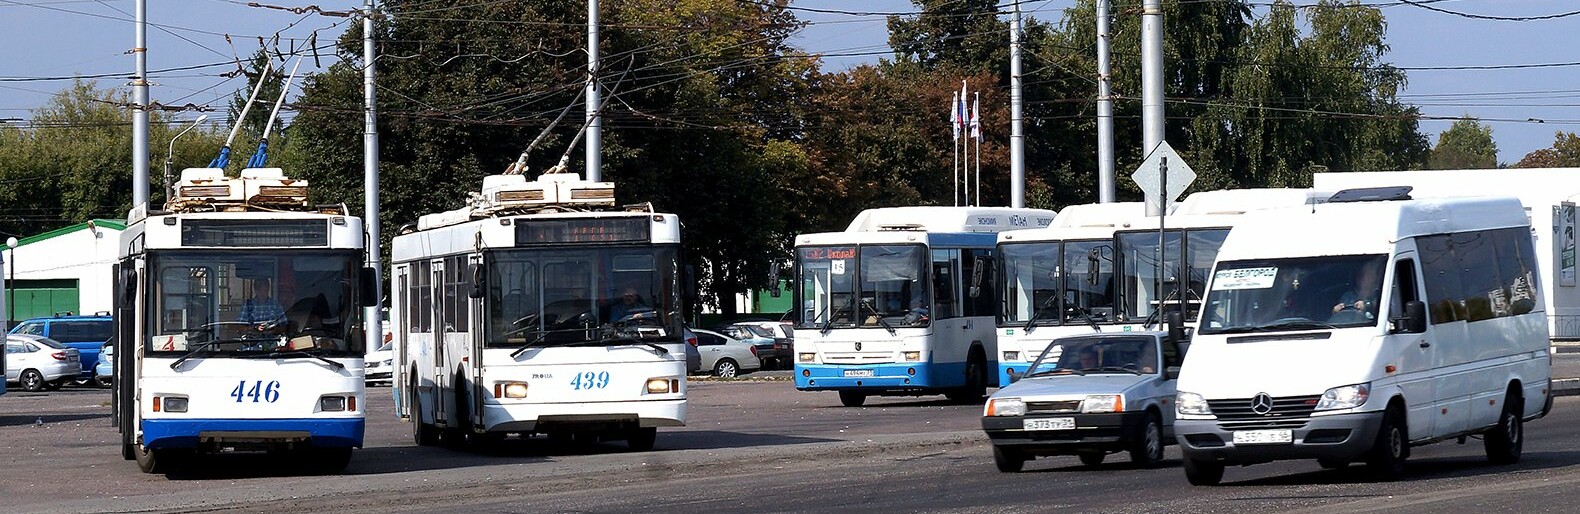 В Белгороде из-за накала страстей перенесли встречу чиновников с водителями троллейбусов